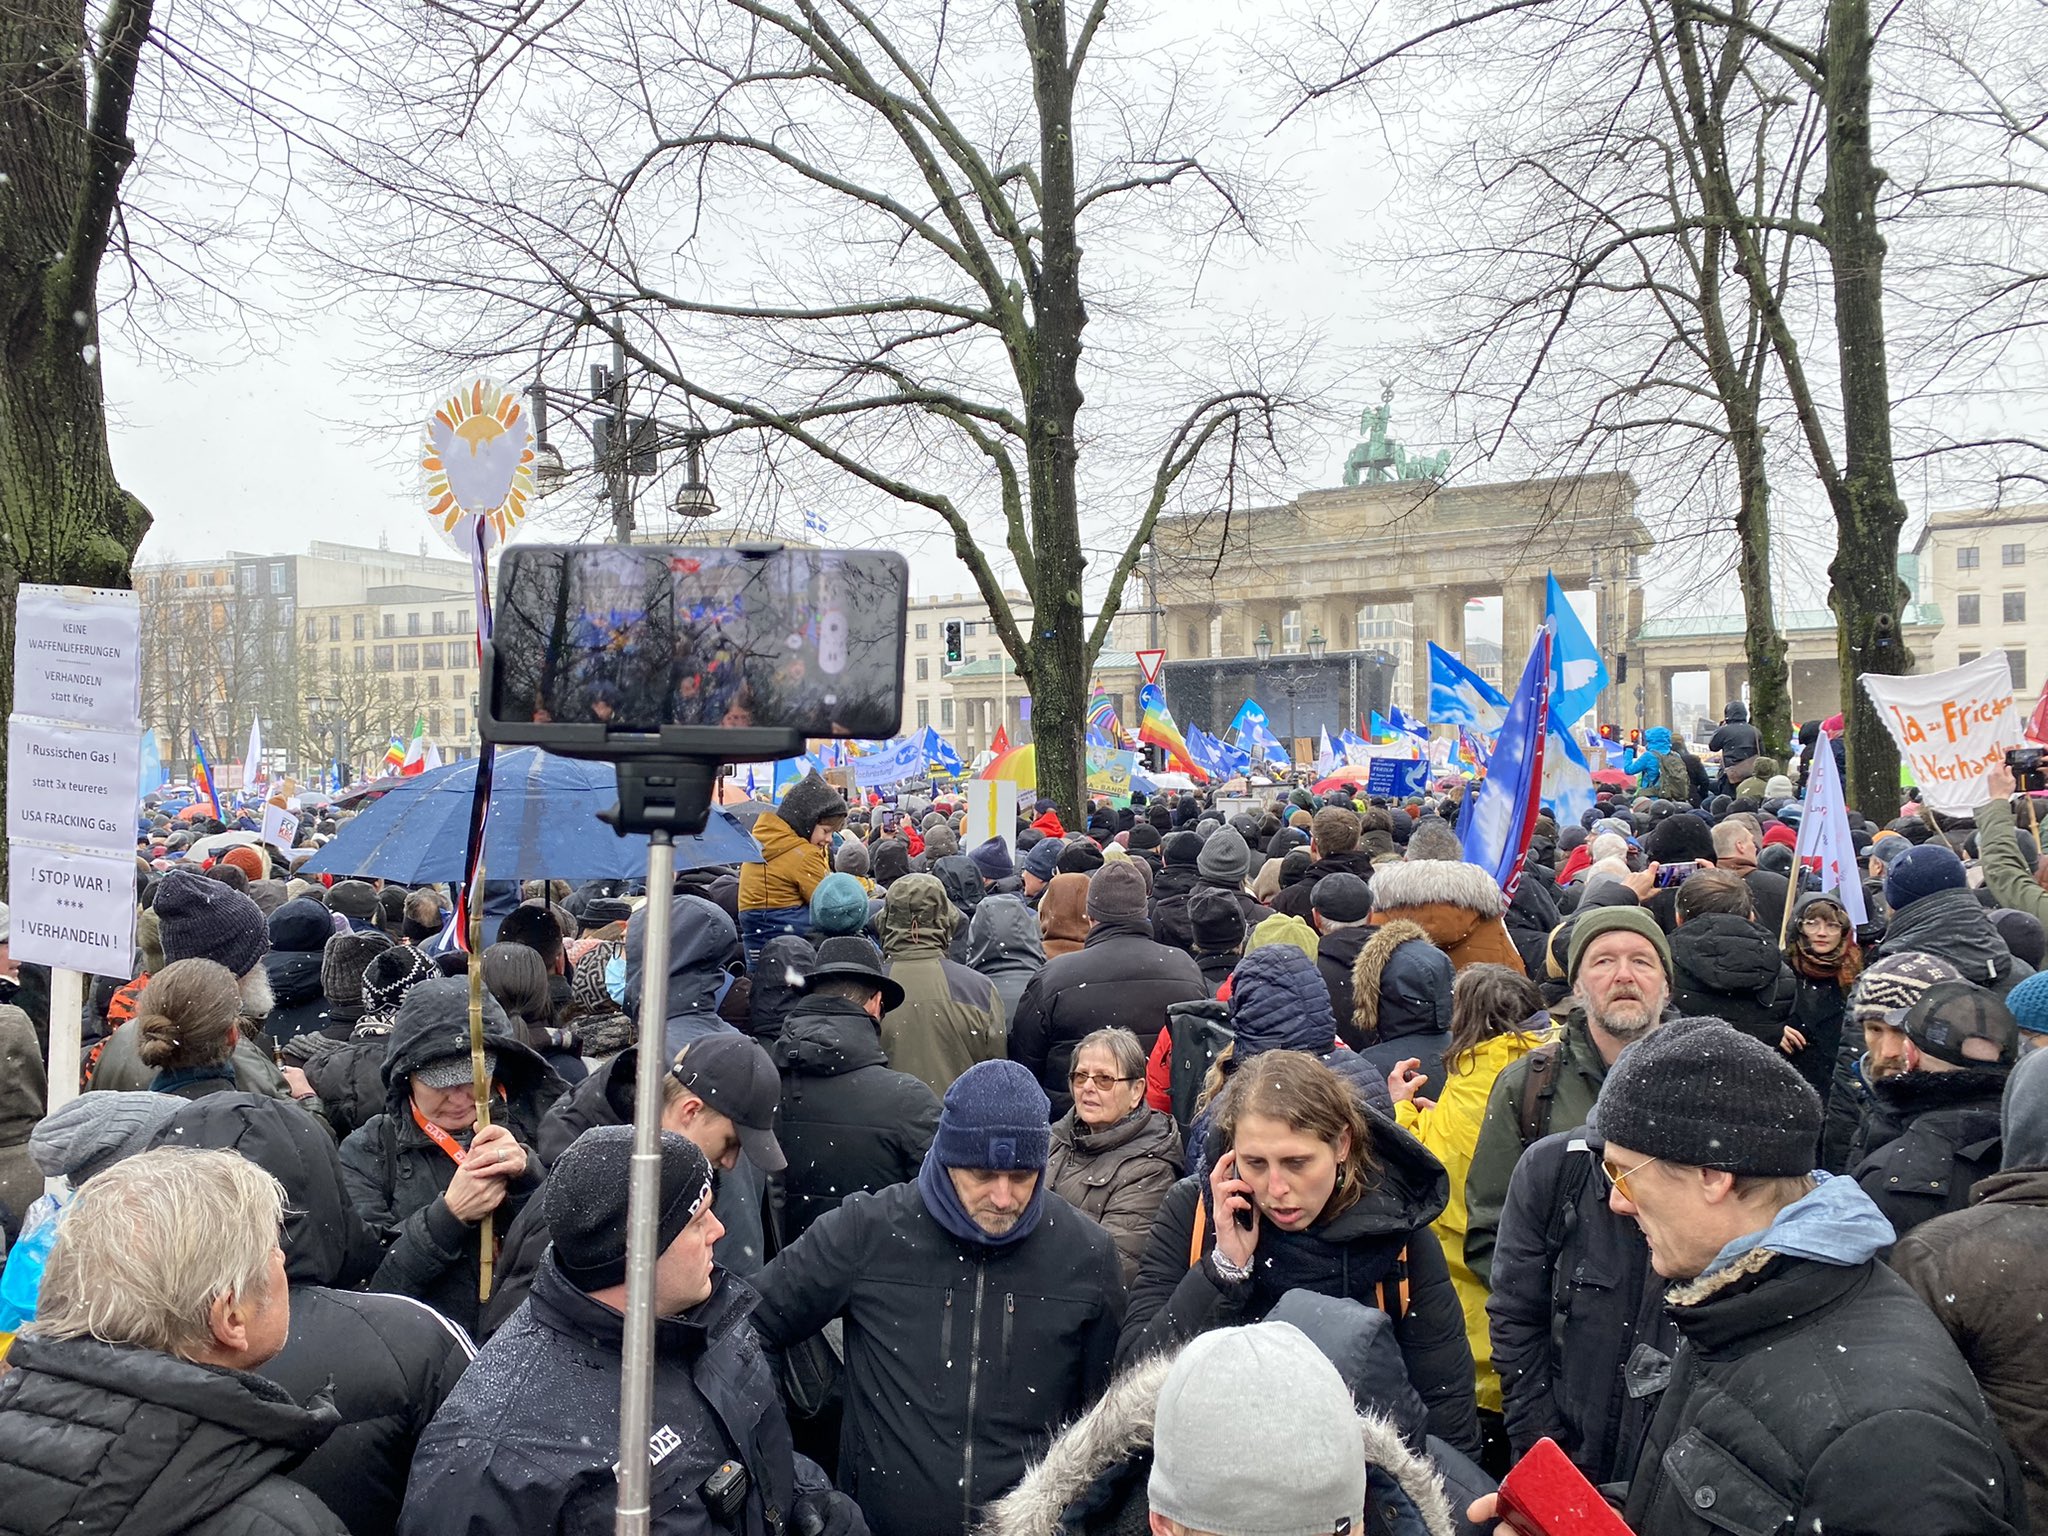 Γερμανία: Διαδήλωσαν κατά της αποστολής όπλων στην Ουκρανία - Θέλουν διαπραγματεύσεις με την Ρωσία